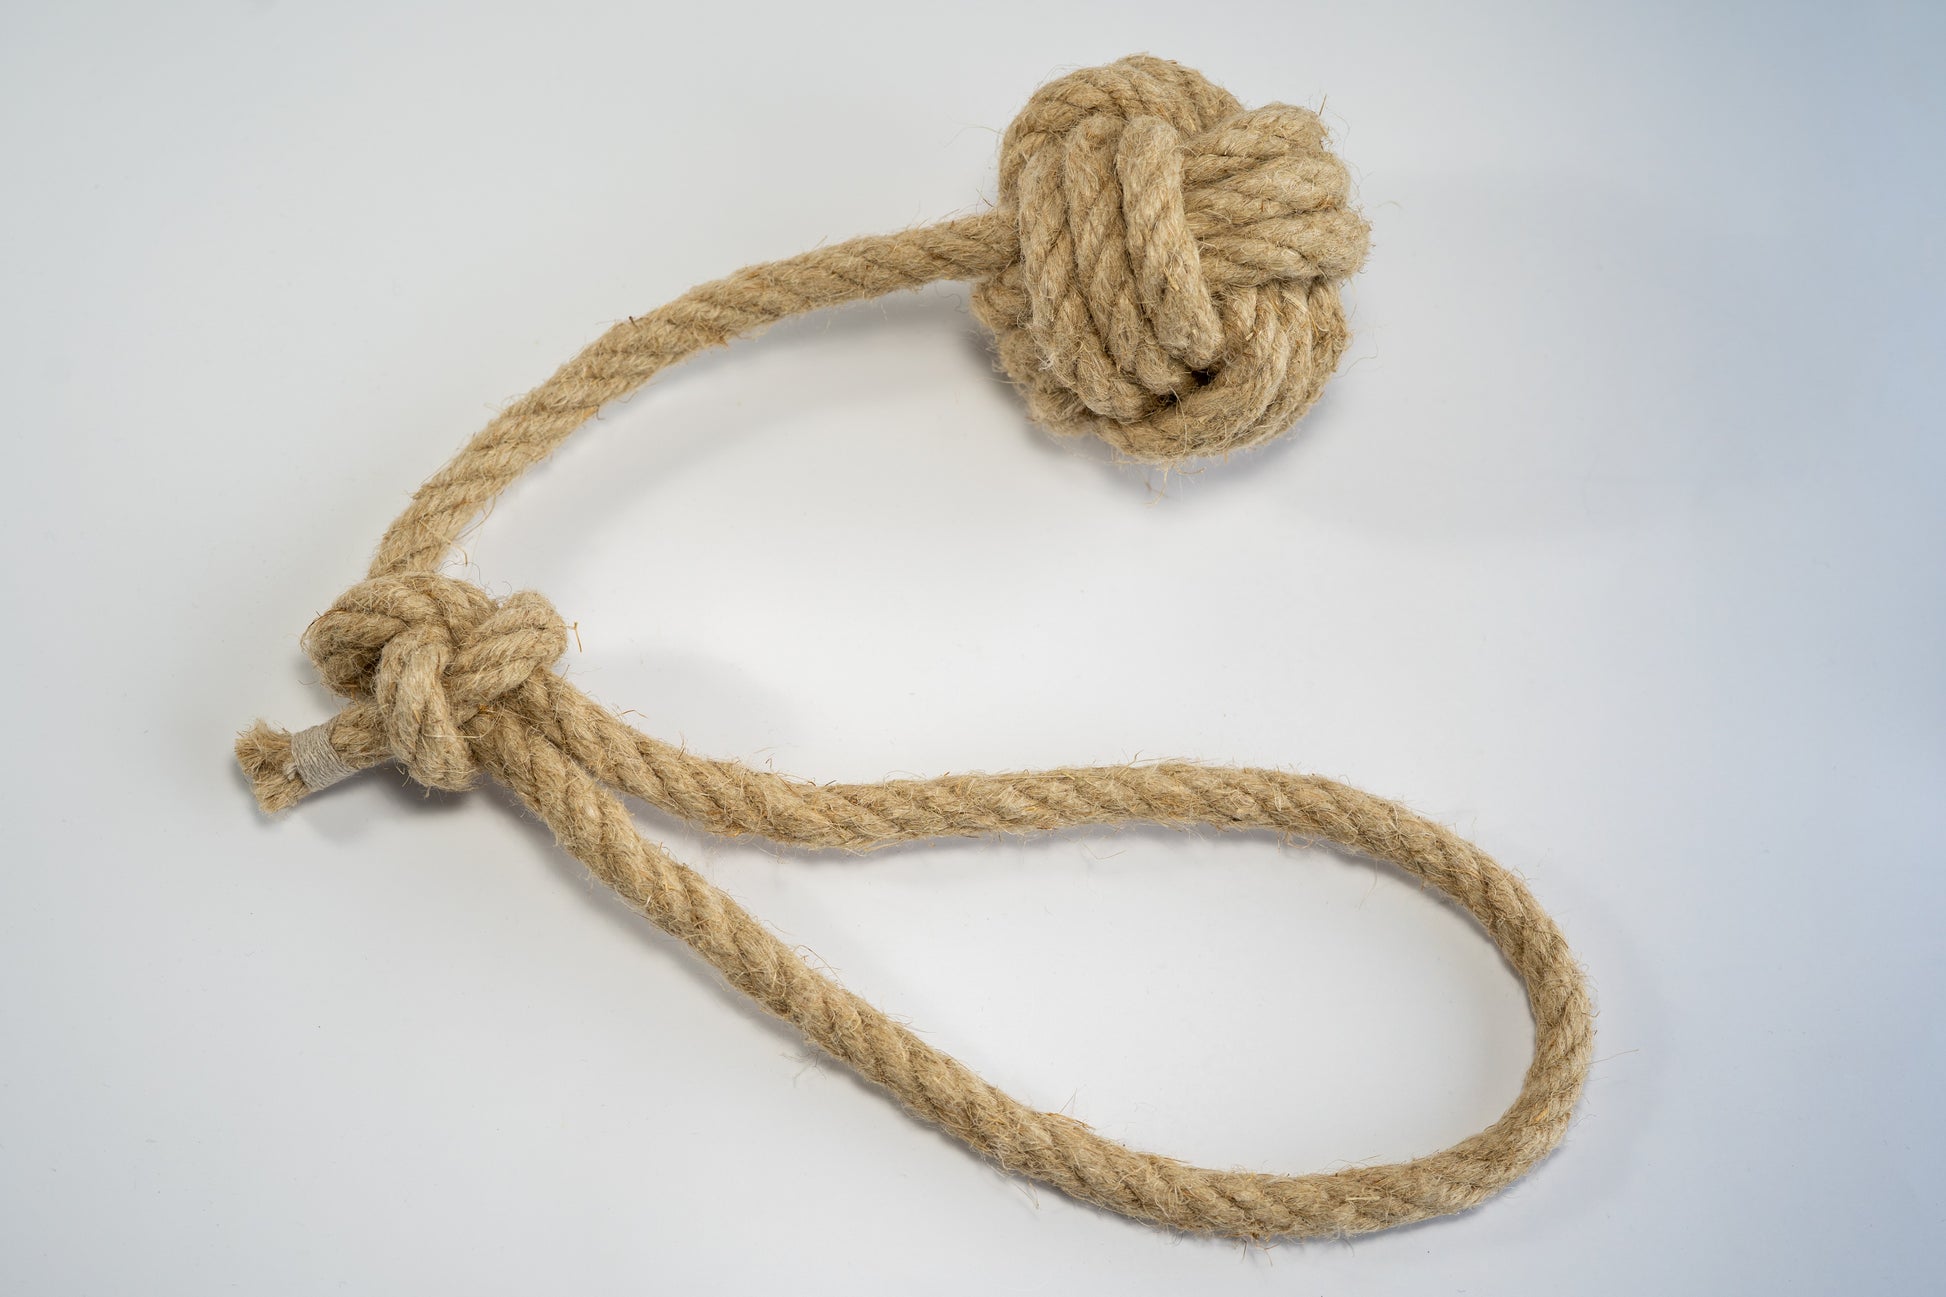 Hemp rope with large monkey fist for dogs. | Corde de chanvre avec poing de singe de grande taille pour chiens.